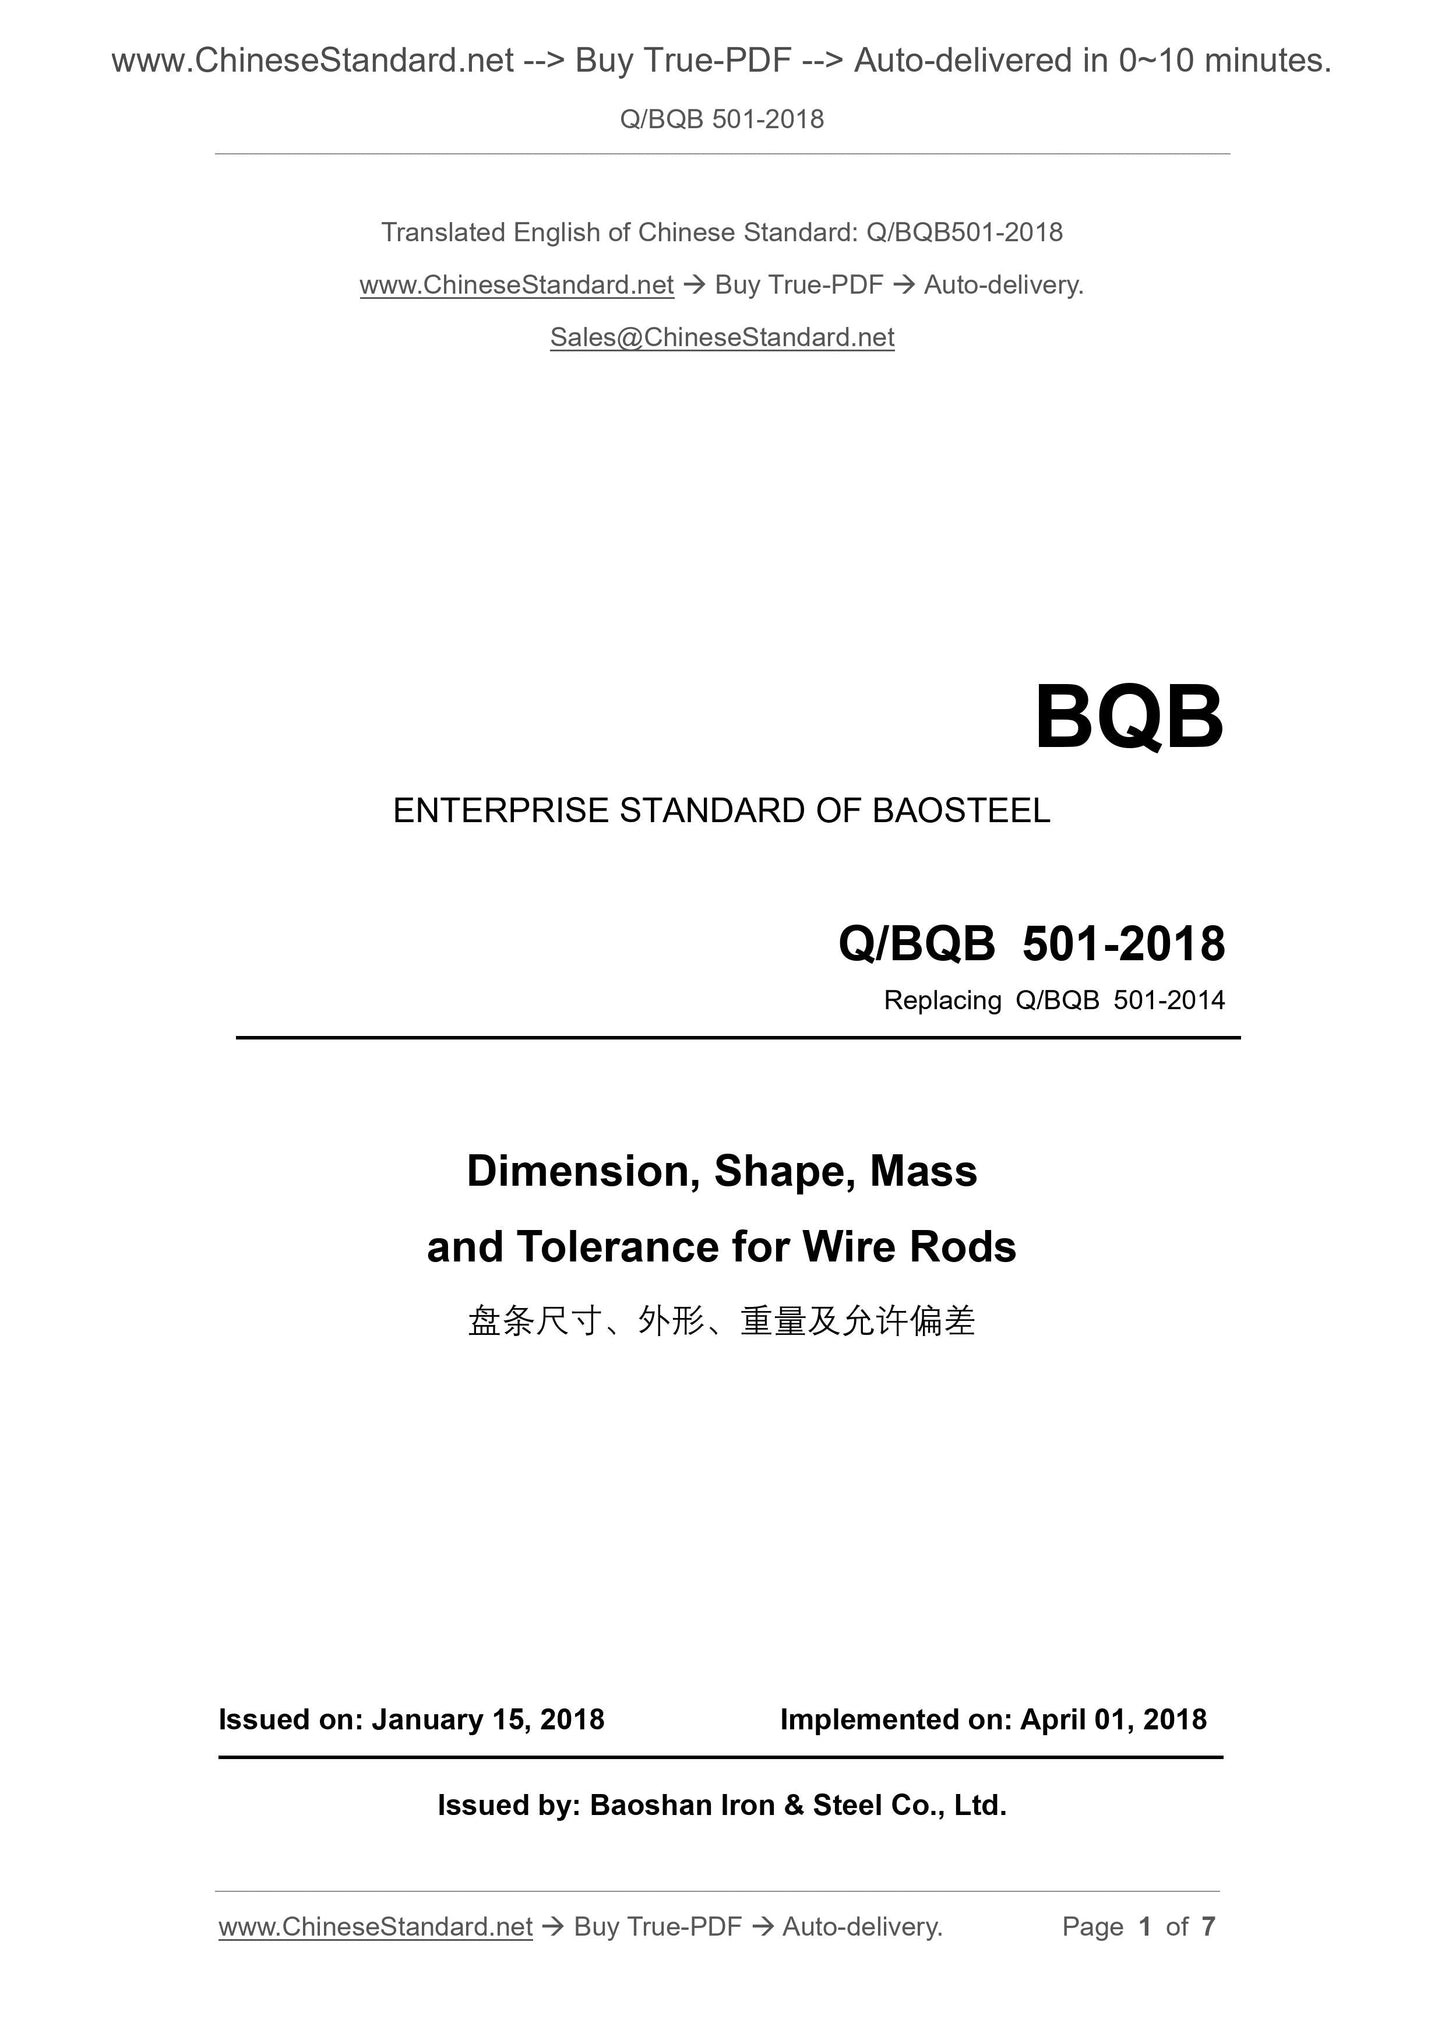 Q/BQB 501-2018 Page 1